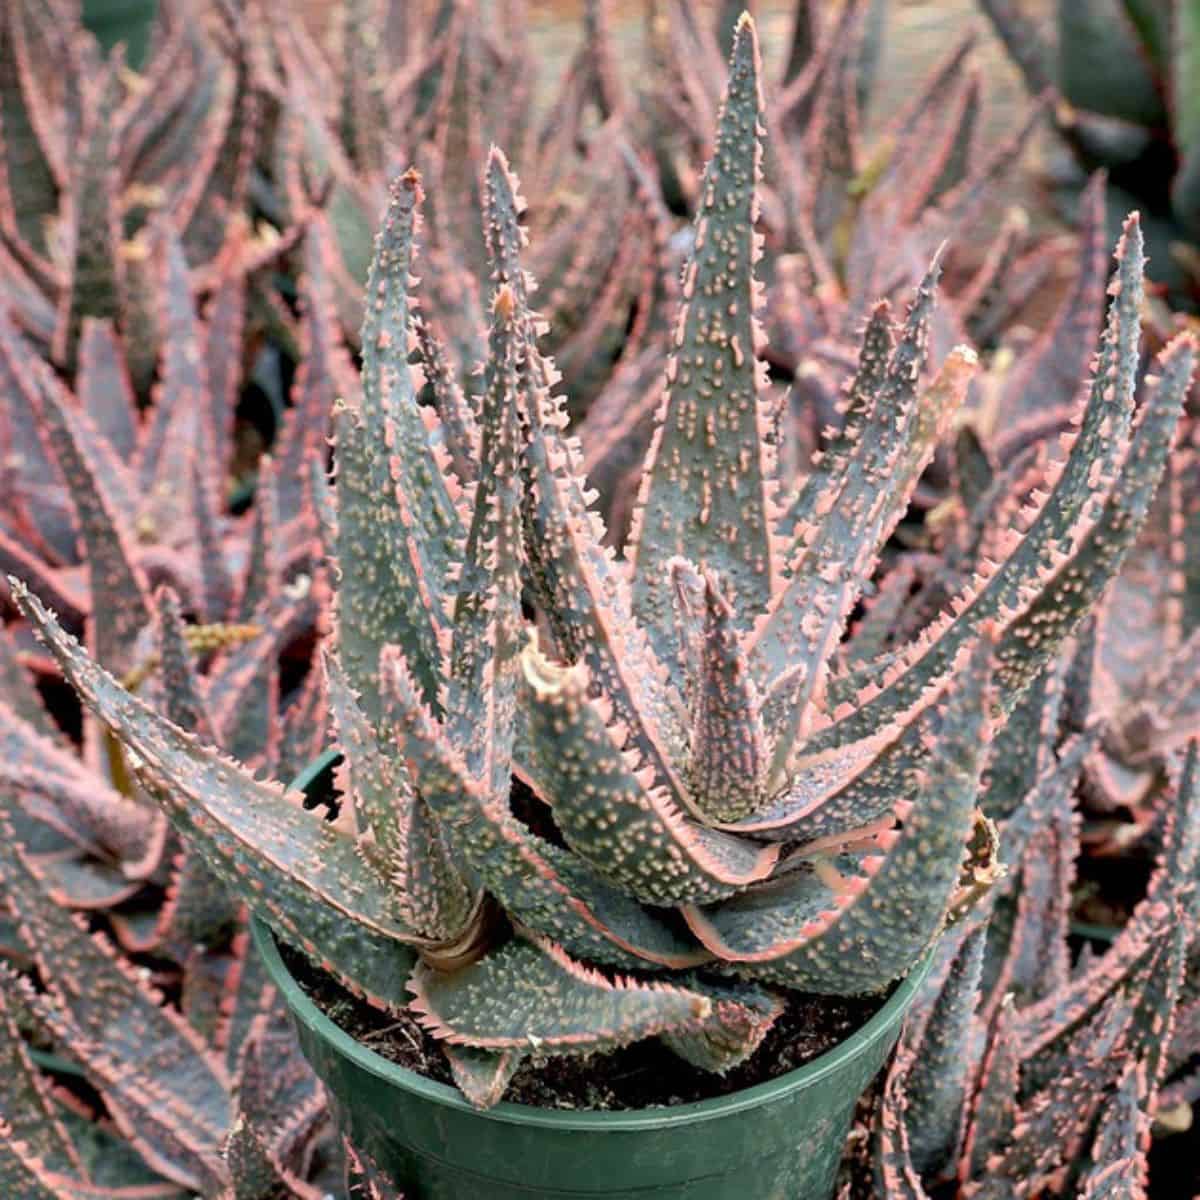 Aloe ‘Purple Haze’ growing in a pot.